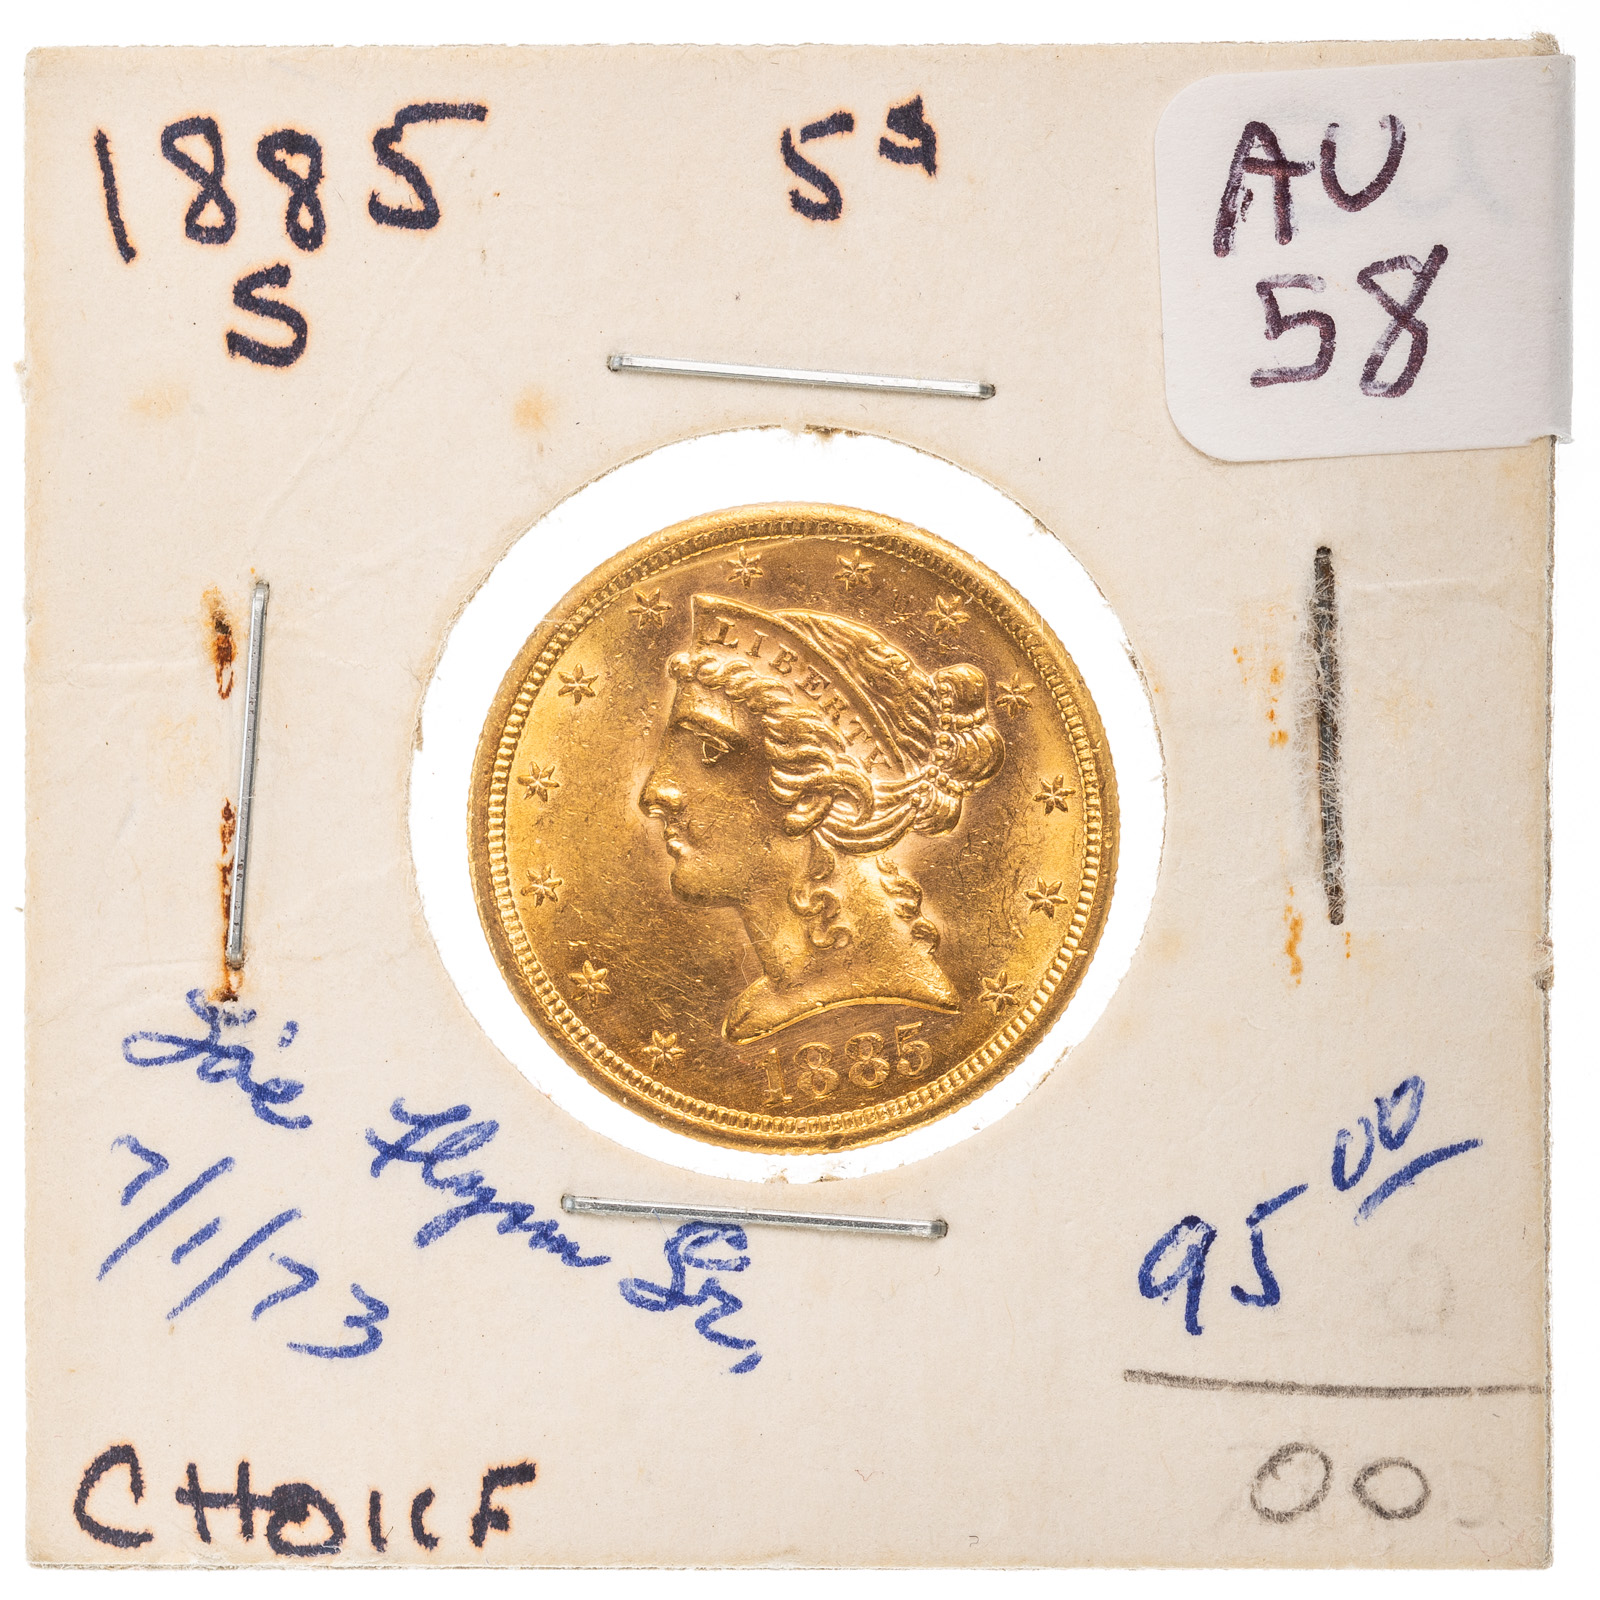 1885 S 5 LIBERTY GOLD HALF EAGLE 3b27d5